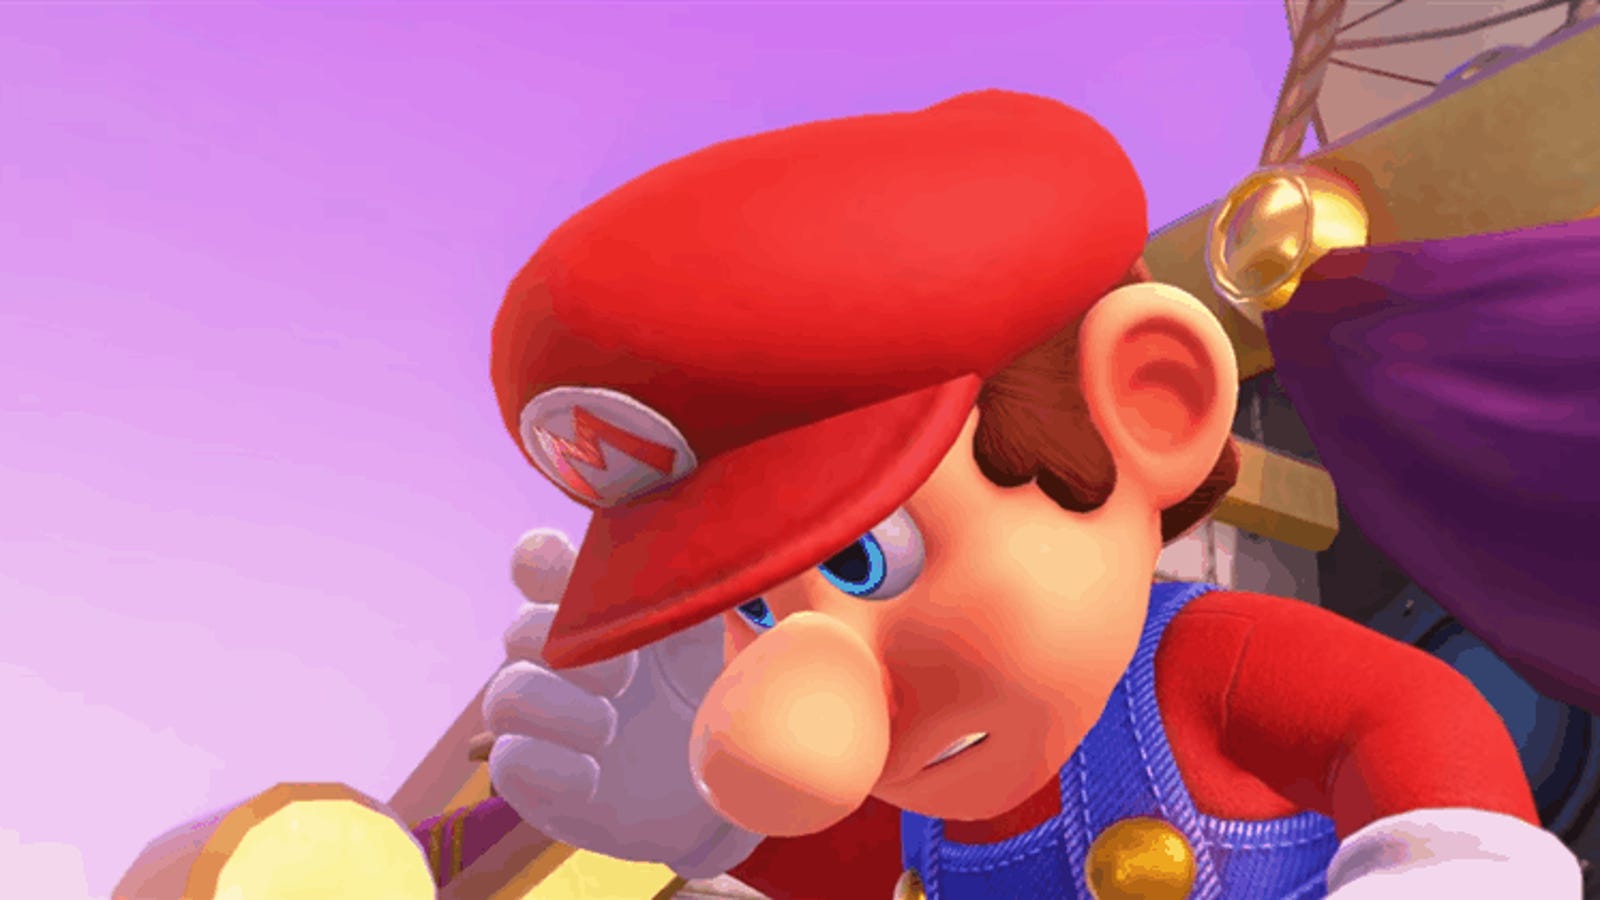 Shaved Mario Is Making Me Feel Strange - Kotaku thumbnail